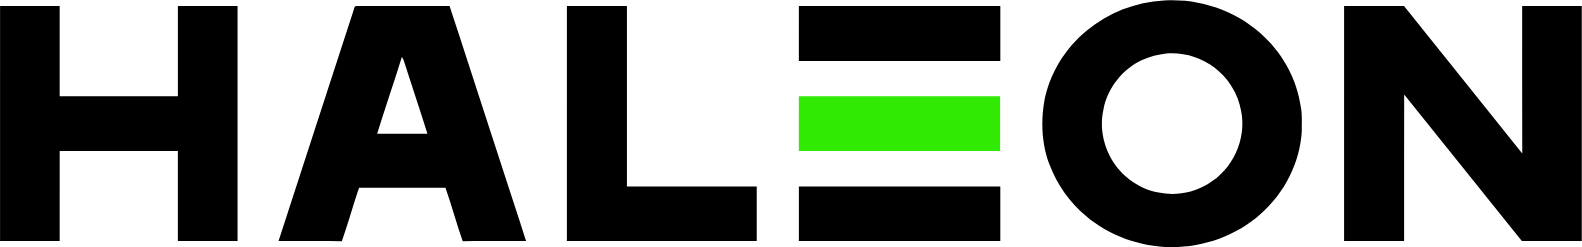 Haleon logo large (transparent PNG)